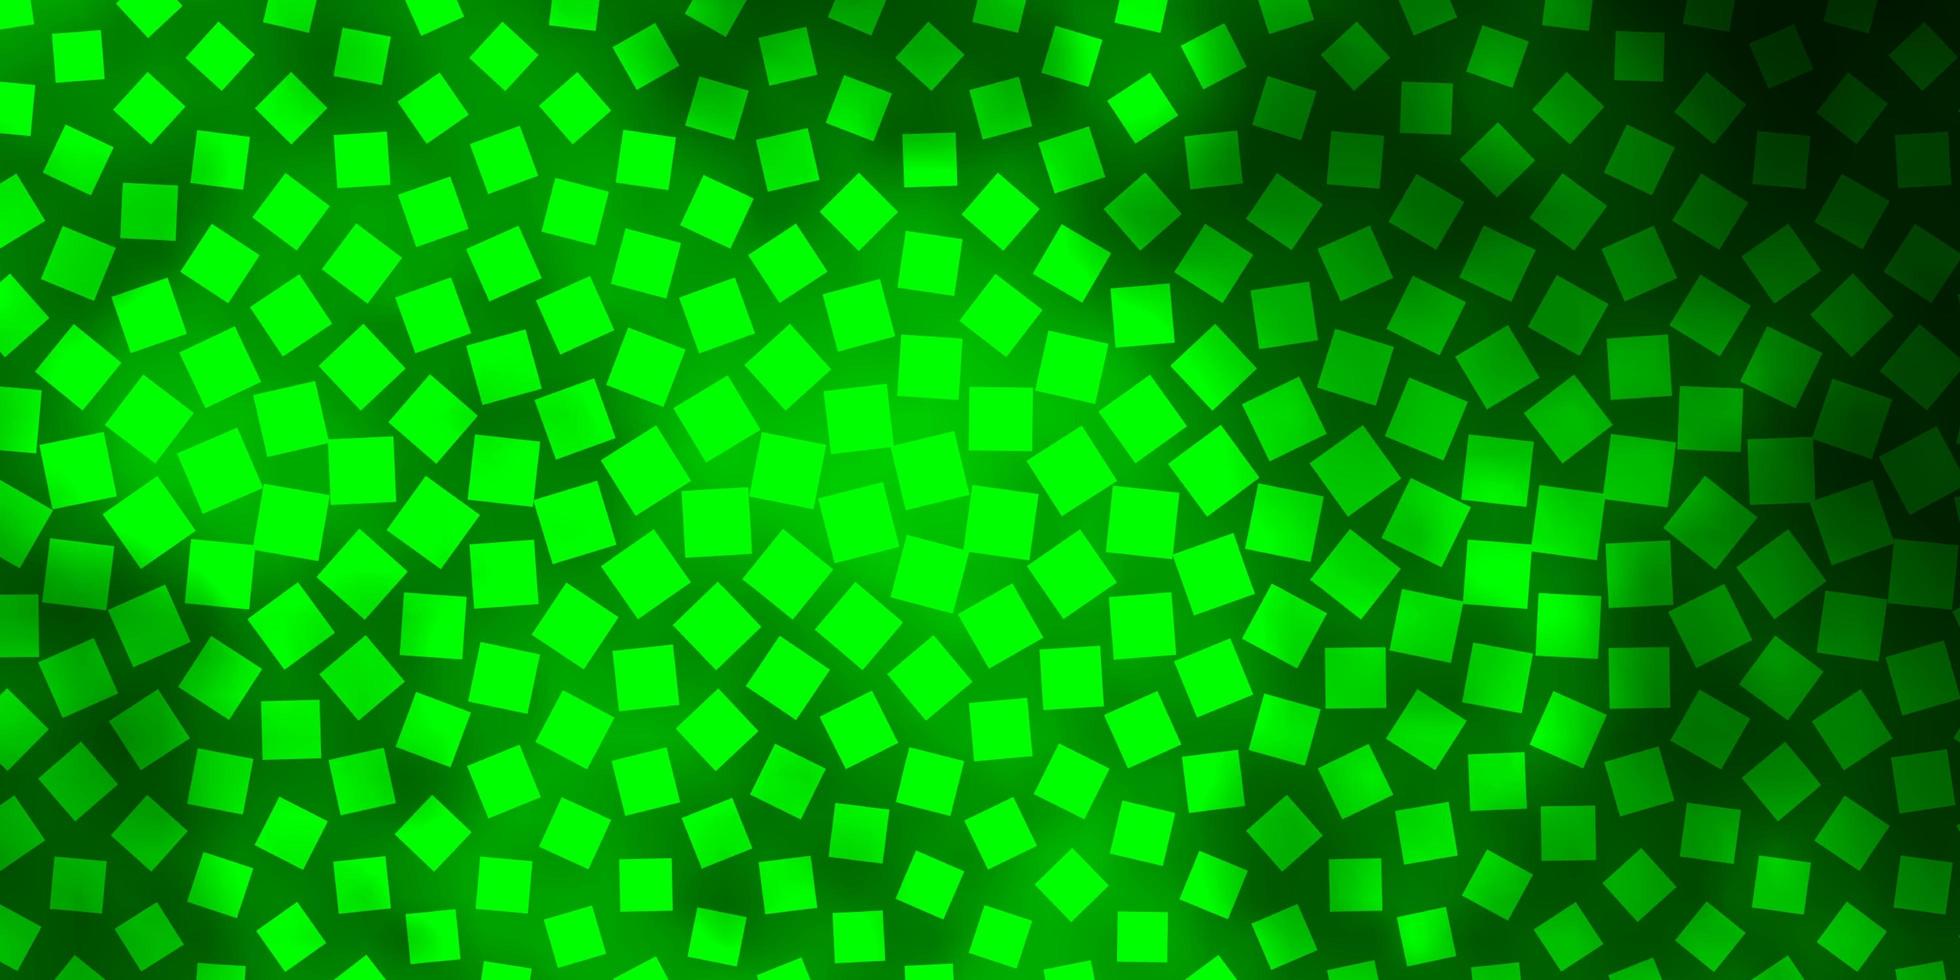 ljusgrön vektorlayout med linjer, rektanglar. abstrakt lutningsillustration med färgglada rektanglar. mönster för affärshäften, broschyrer vektor